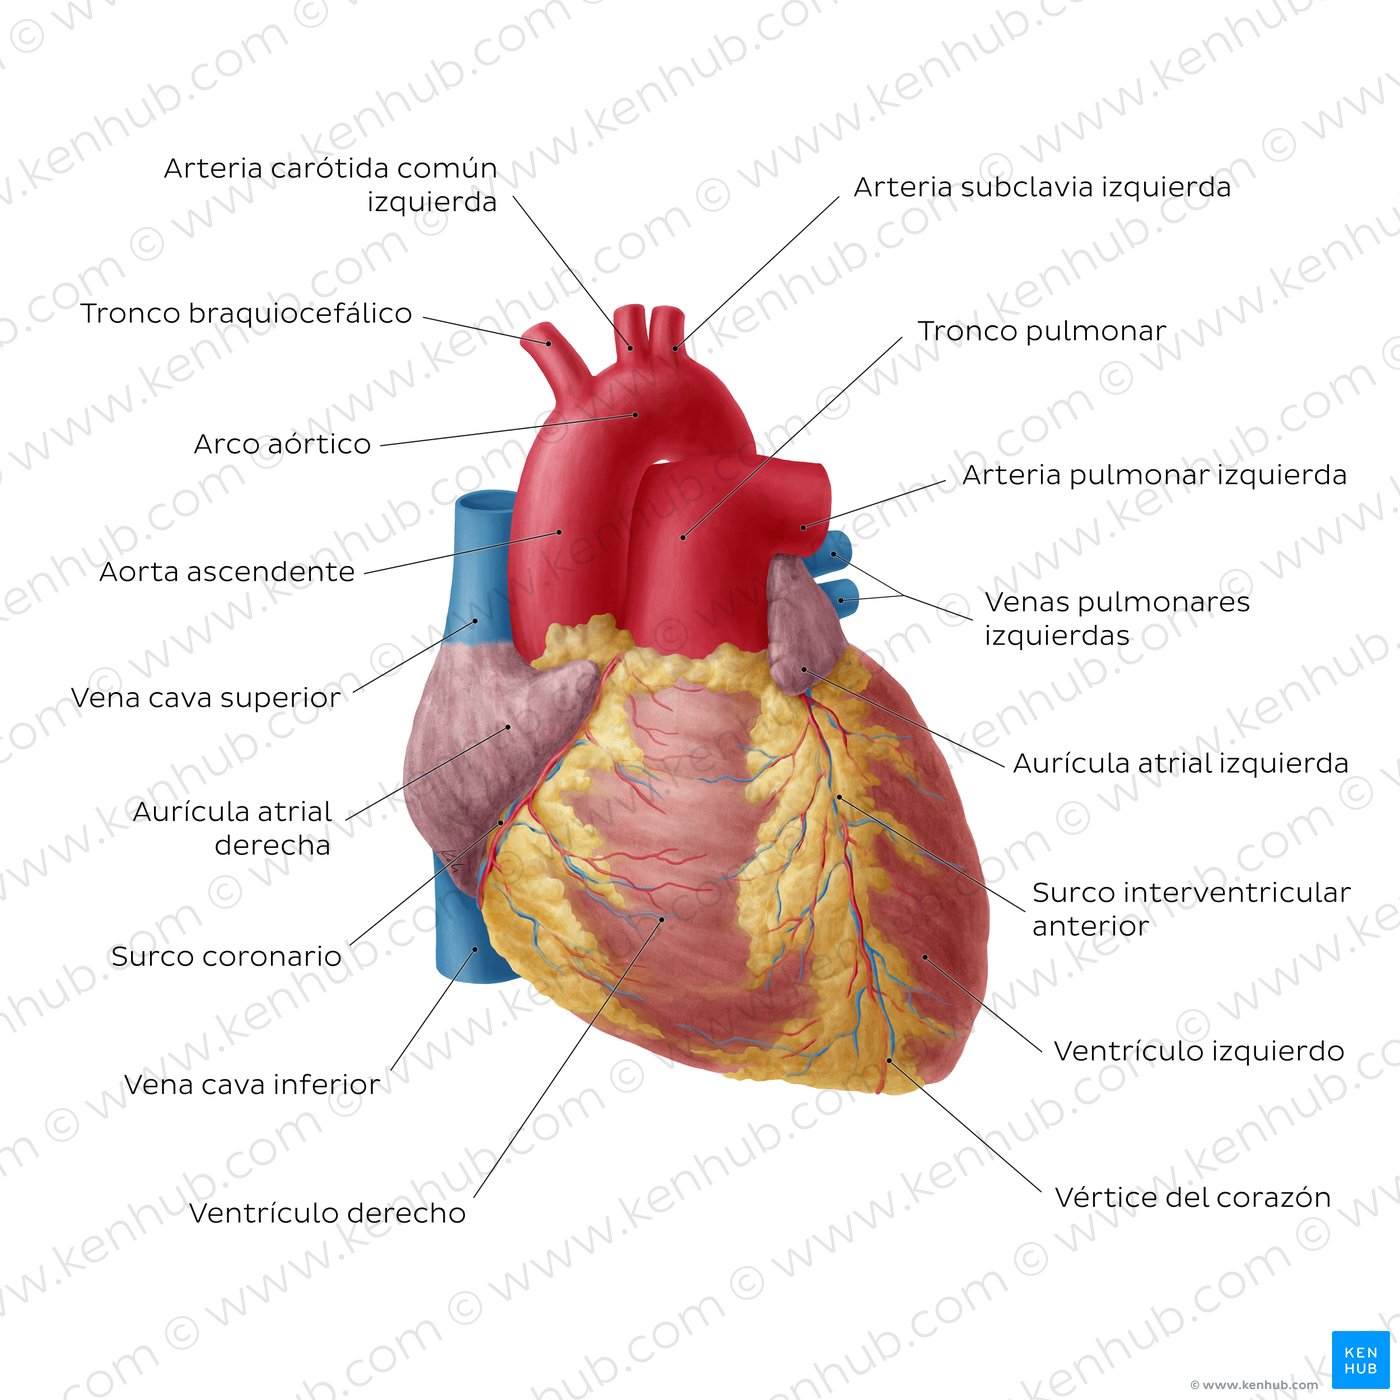 Diagrama del corazón rotulado que muestra al corazón desde una perspectiva anterior